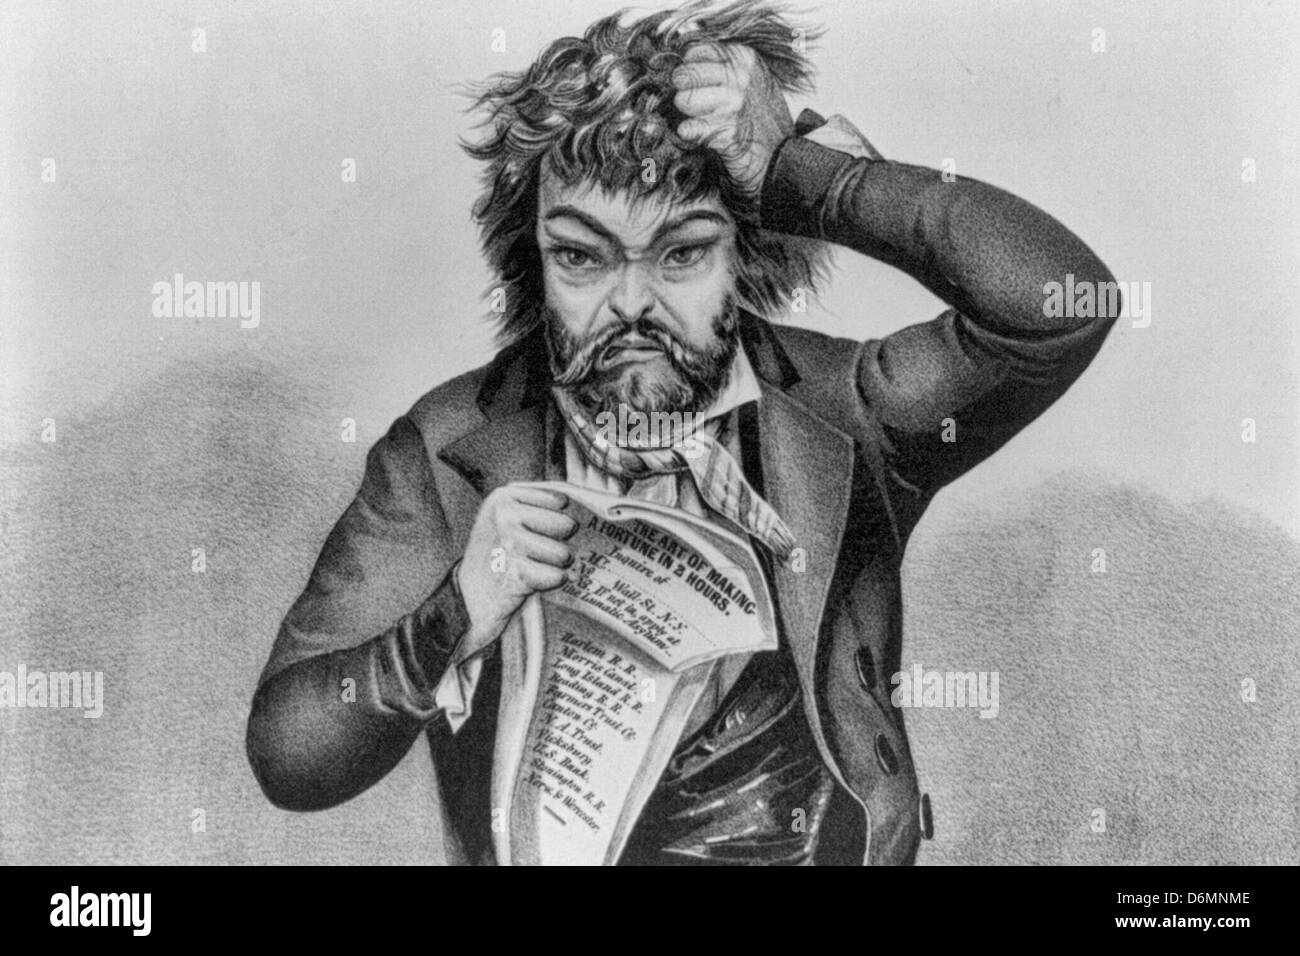 Les stocks - fous à l'homme en tirant sur ses cheveux quand le marché baisse, Irca 1849 Banque D'Images